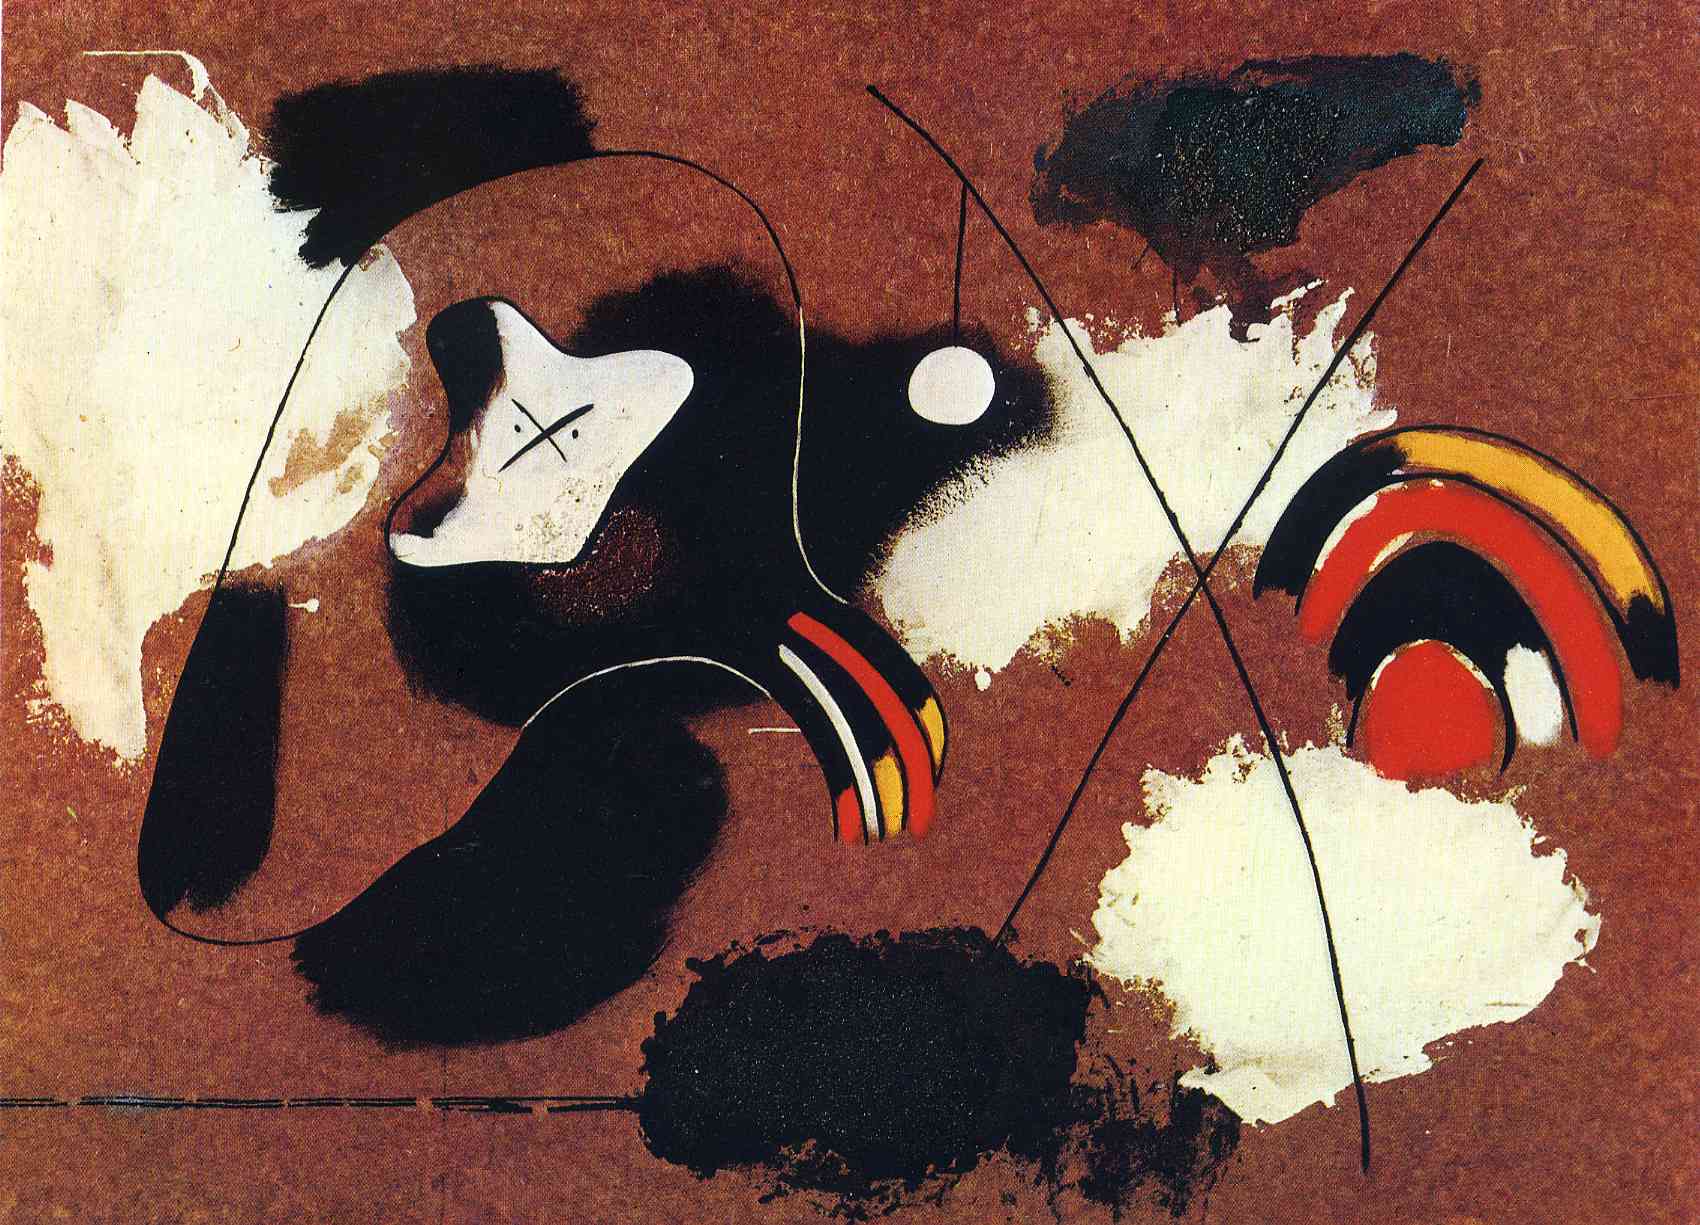 Resim Sanatı by Joan Miró - 1936 - 78 x 108 cm 